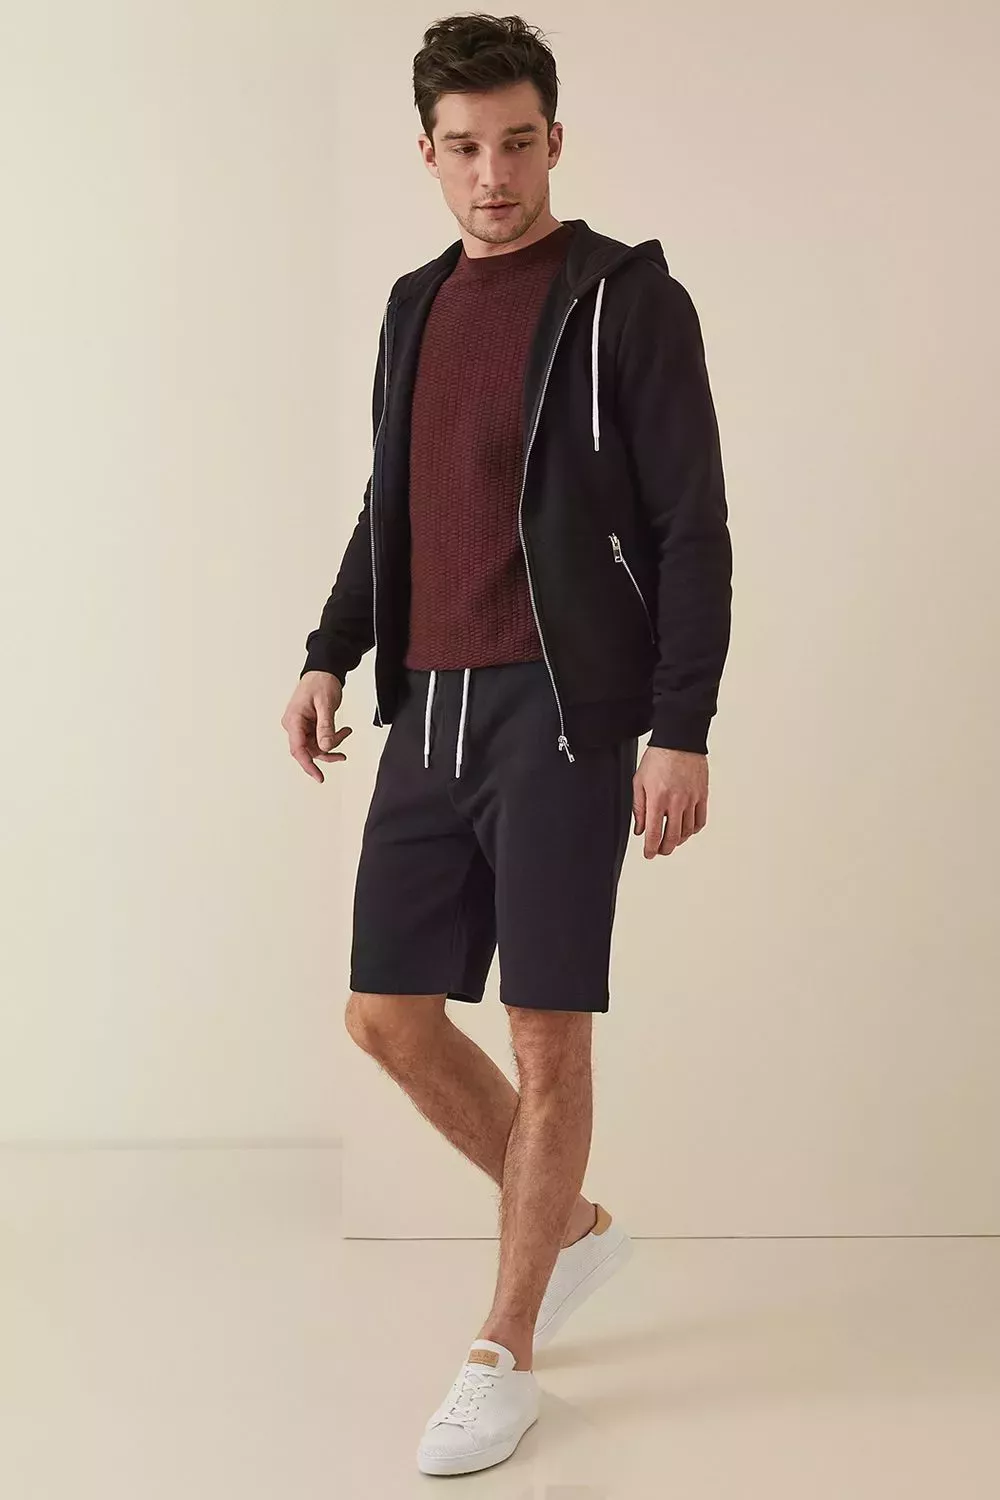 Cómo llevar una sudadera con capucha: 5 conjuntos modernos y con estilo para hombres